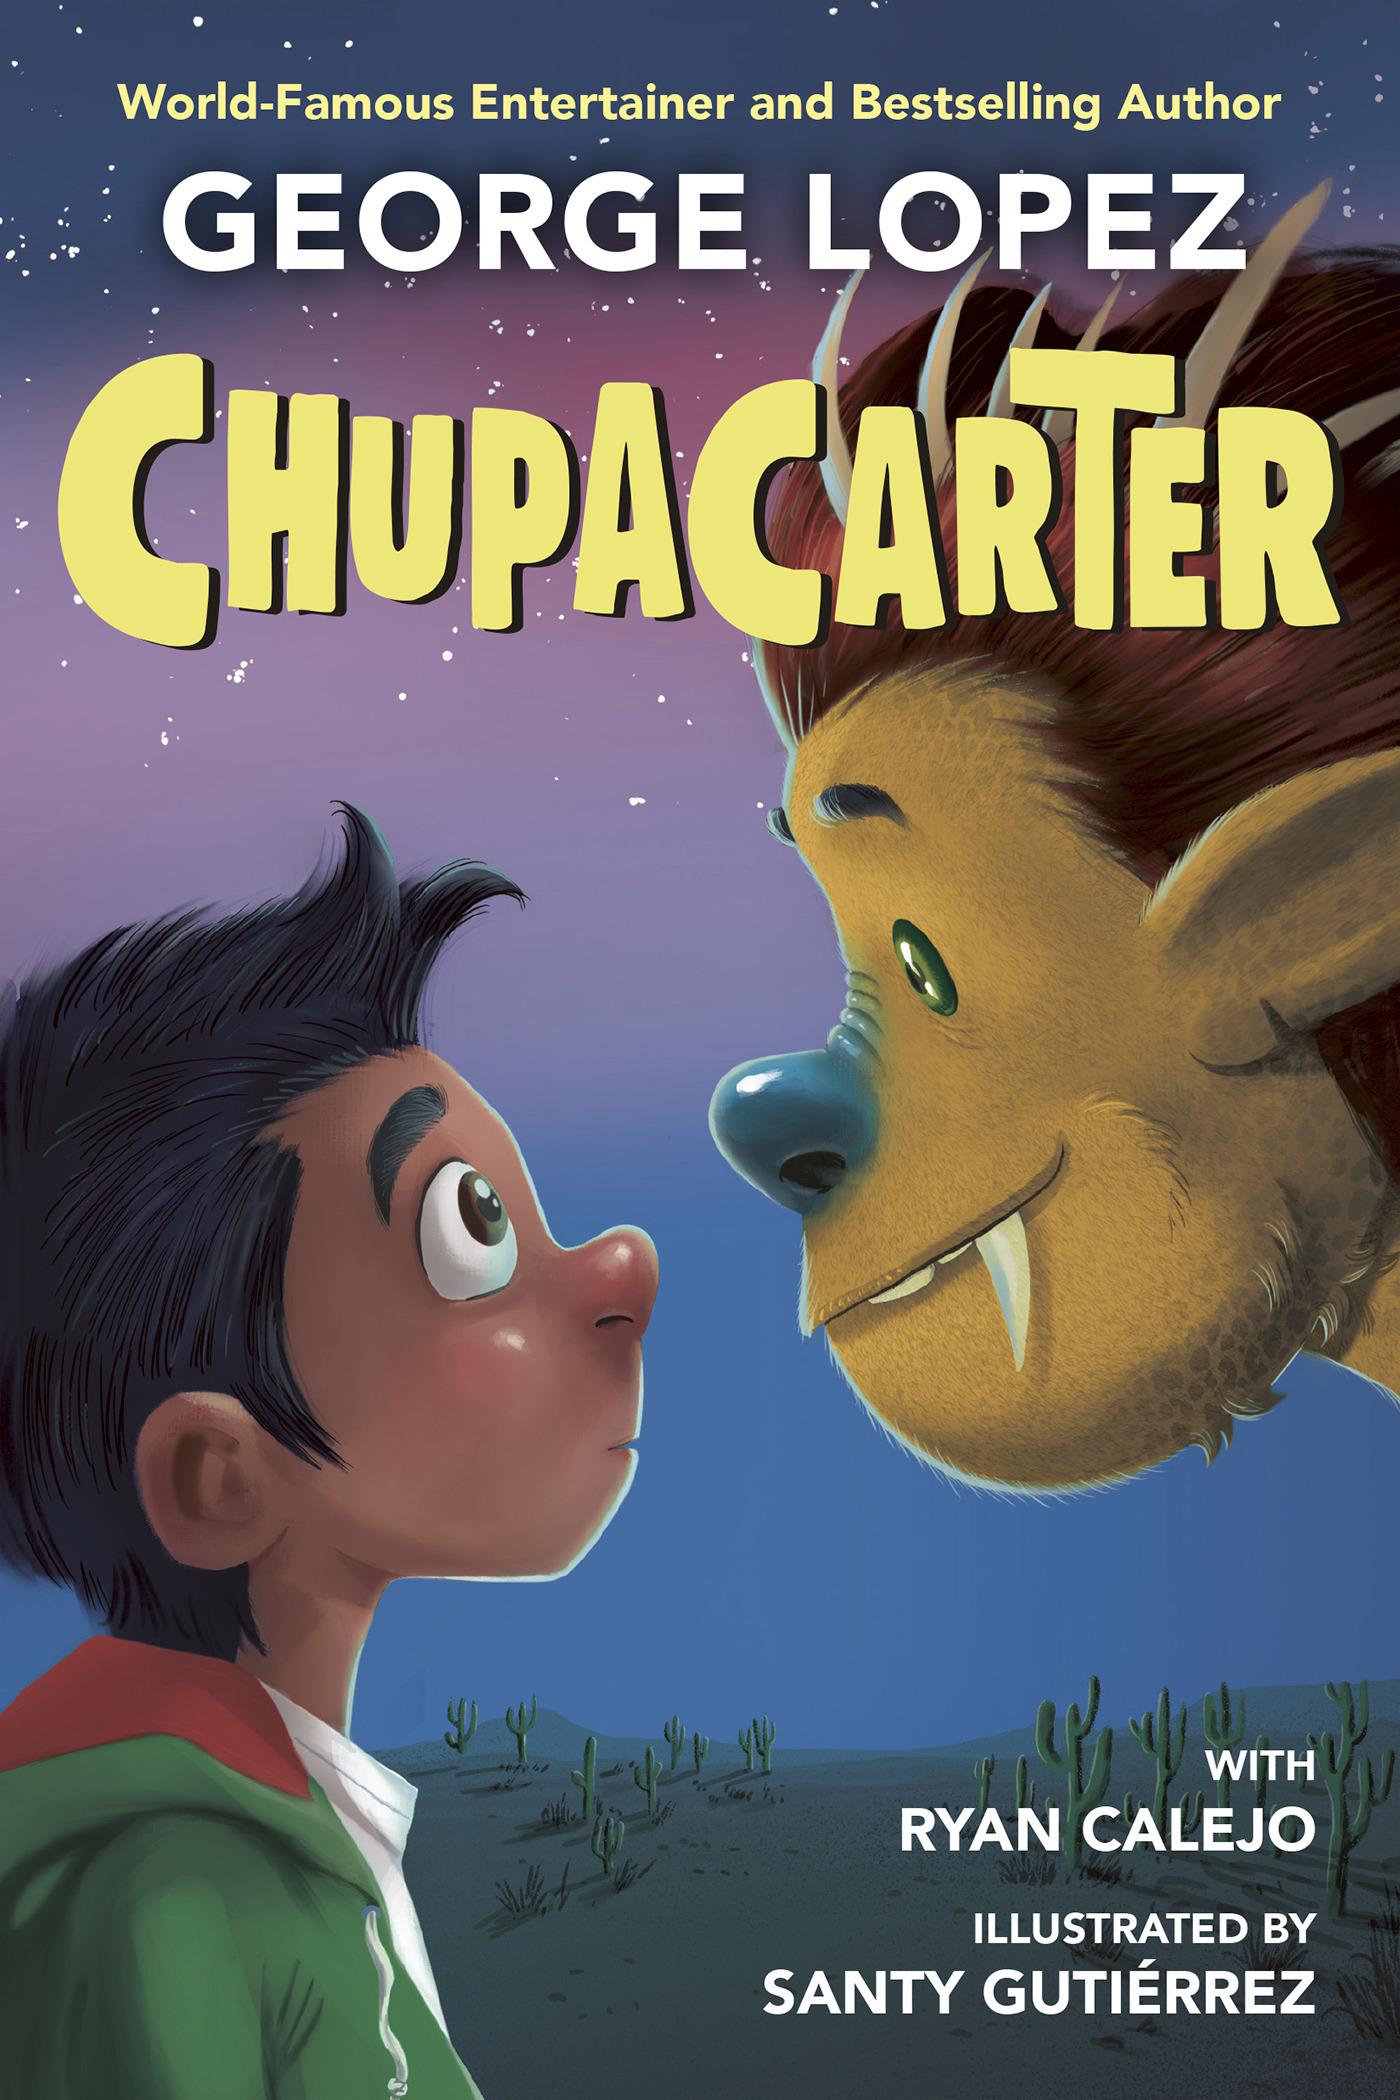 George López está escribiendo una serie de libros “fantásticos” para niños de primaria